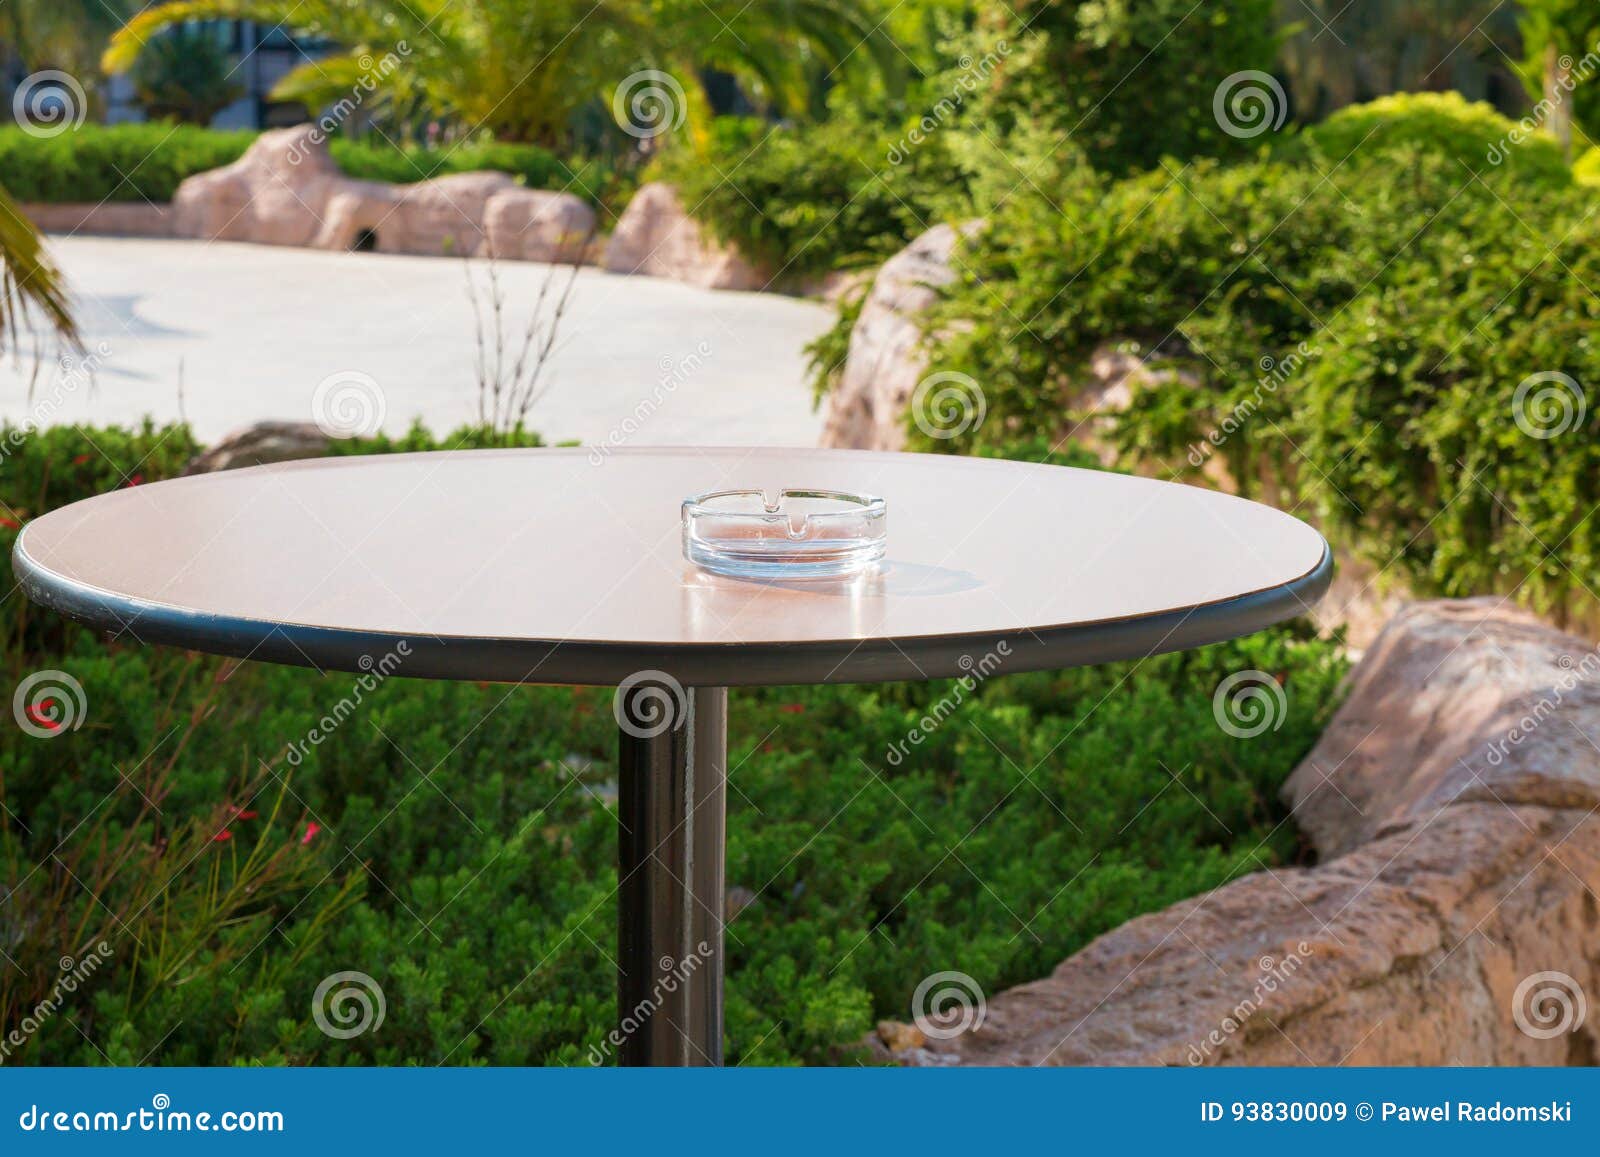 Leerer Aschenbecher Auf Einem Mit Beinen Versehen, Rundtisch Im Garten  Stockbild - Bild von gewohnheit, betrieb: 93830009